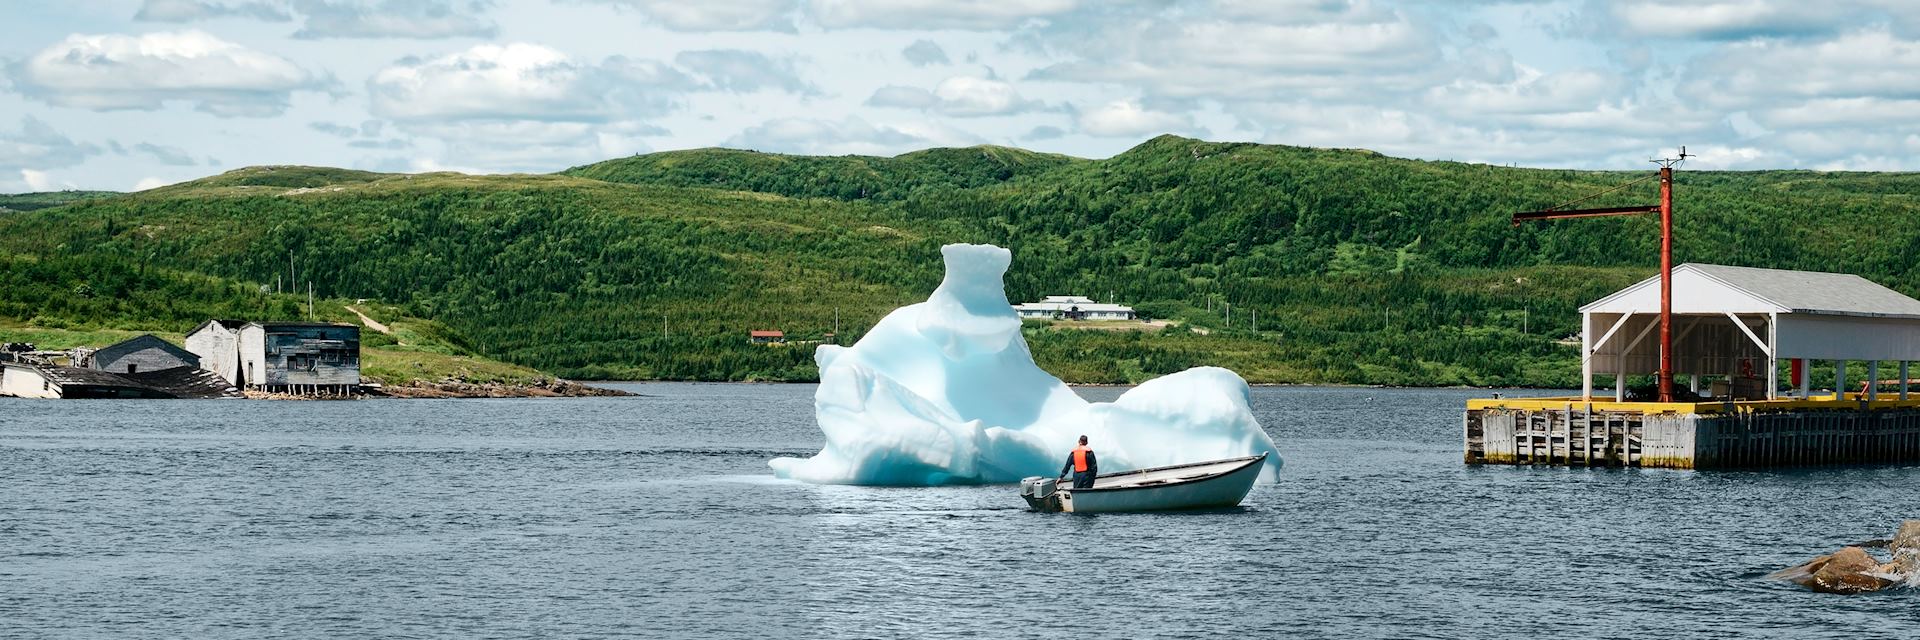 Red Bay, Newfoundland and Labrador